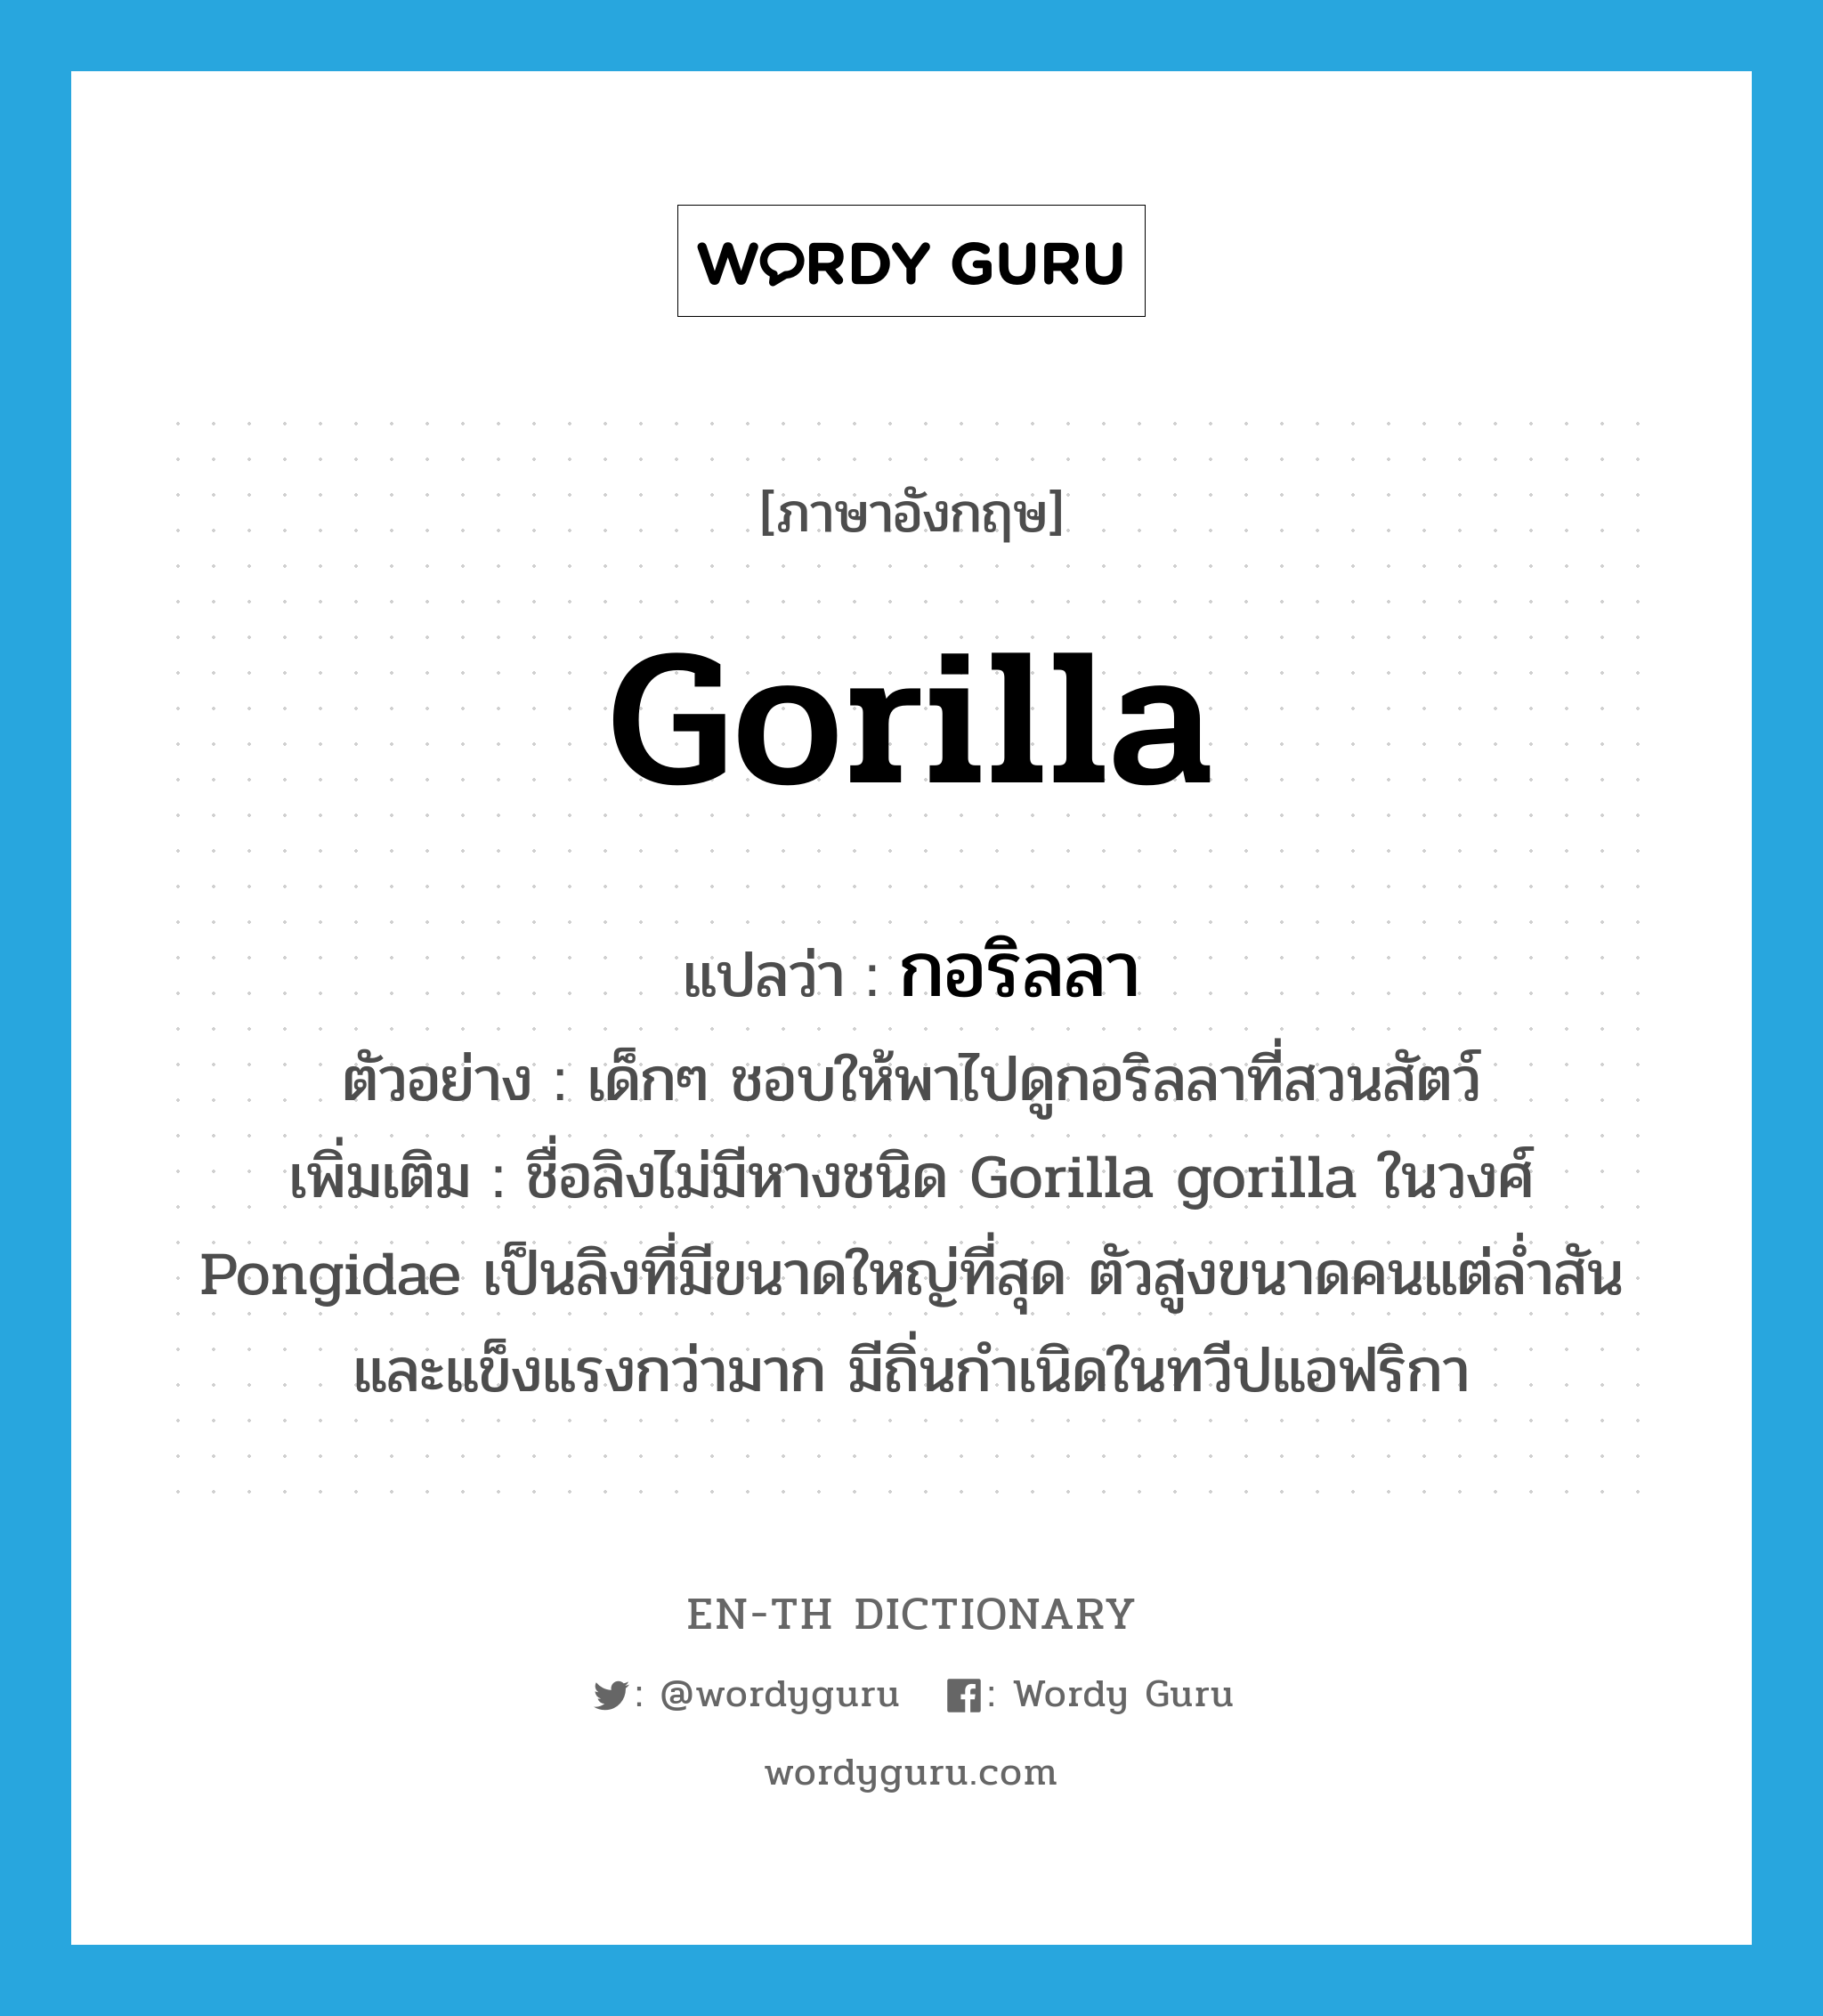 กอริลลา ภาษาอังกฤษ?, คำศัพท์ภาษาอังกฤษ กอริลลา แปลว่า gorilla ประเภท N ตัวอย่าง เด็กๆ ชอบให้พาไปดูกอริลลาที่สวนสัตว์ เพิ่มเติม ชื่อลิงไม่มีหางชนิด Gorilla gorilla ในวงศ์ Pongidae เป็นลิงที่มีขนาดใหญ่ที่สุด ตัวสูงขนาดคนแต่ล่ำสันและแข็งแรงกว่ามาก มีถิ่นกำเนิดในทวีปแอฟริกา หมวด N